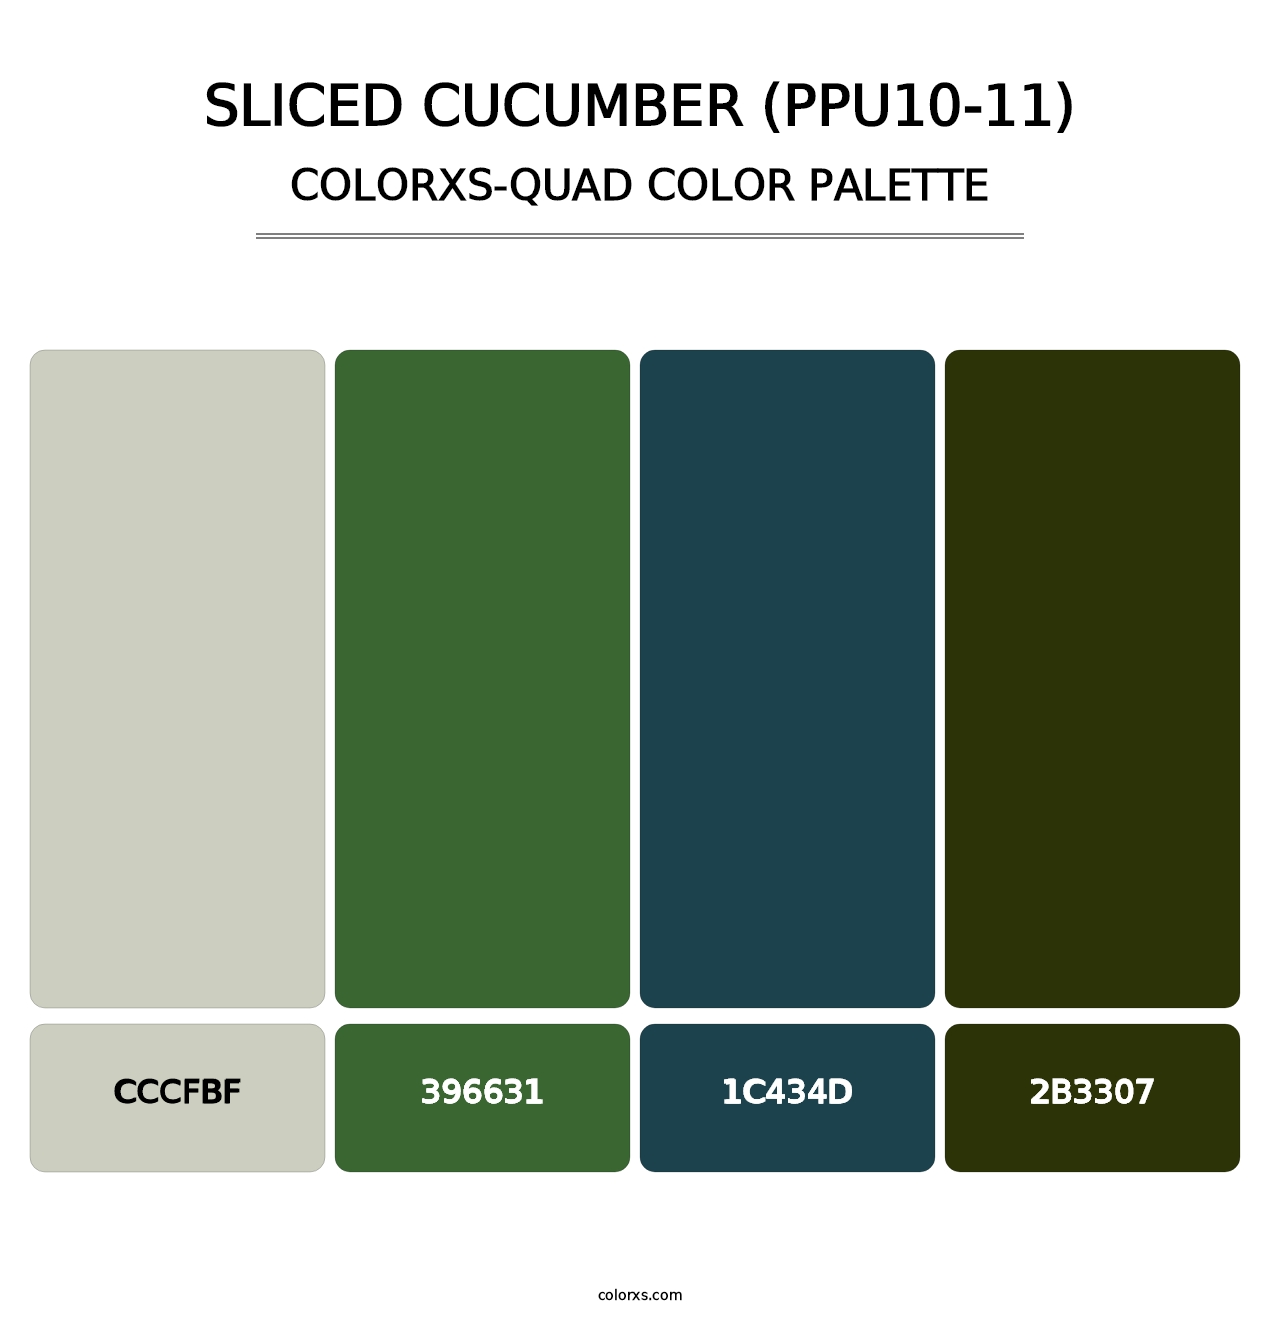 Sliced Cucumber (PPU10-11) - Colorxs Quad Palette